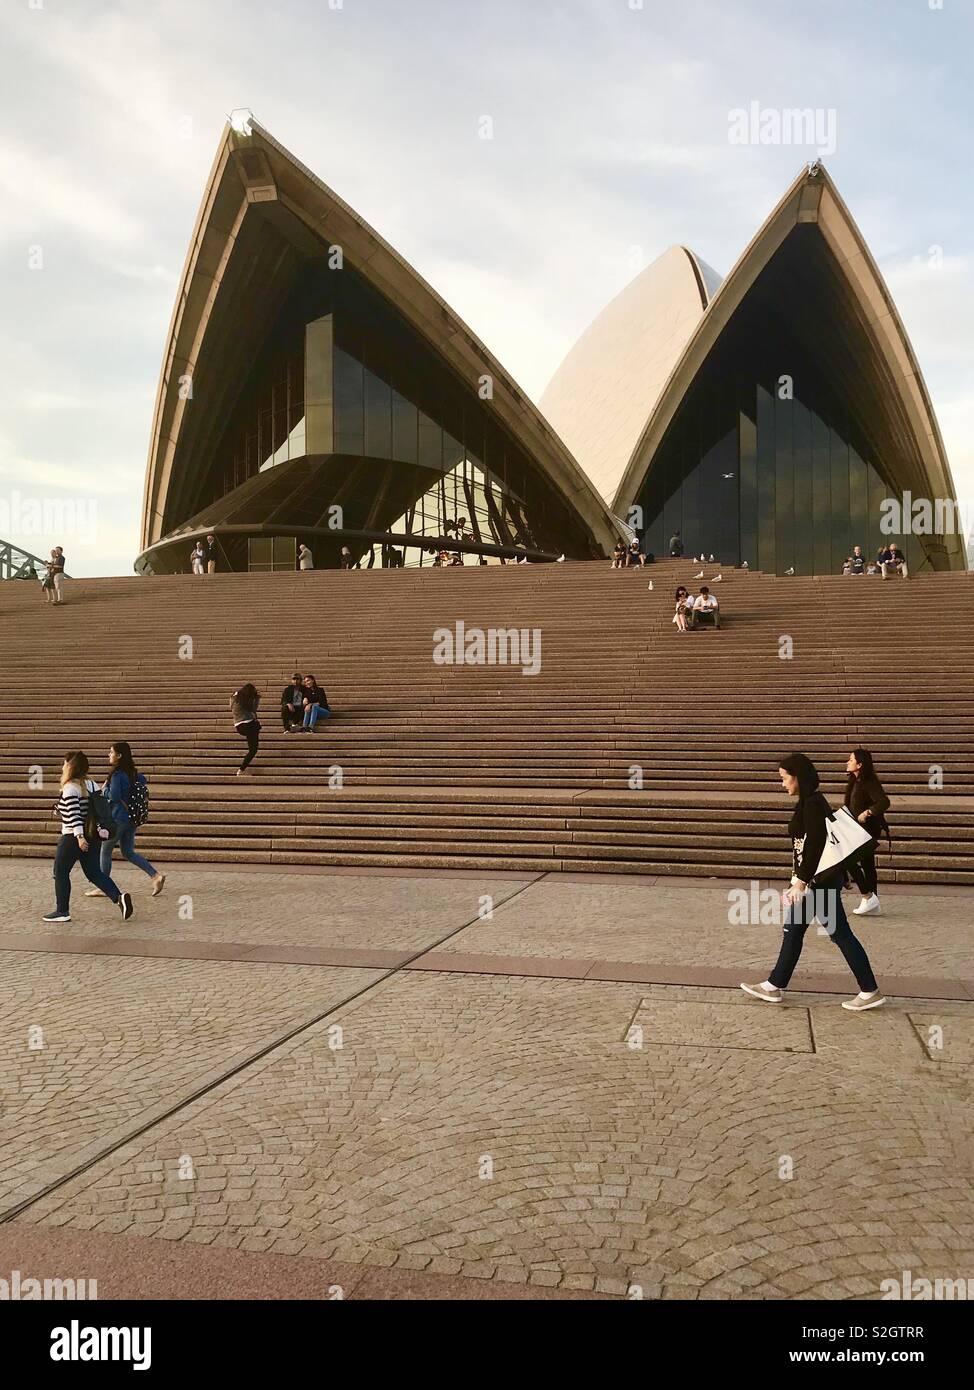 Steps leading up to the iconic Sydney Opera House, NSW, Australia Stock Photo